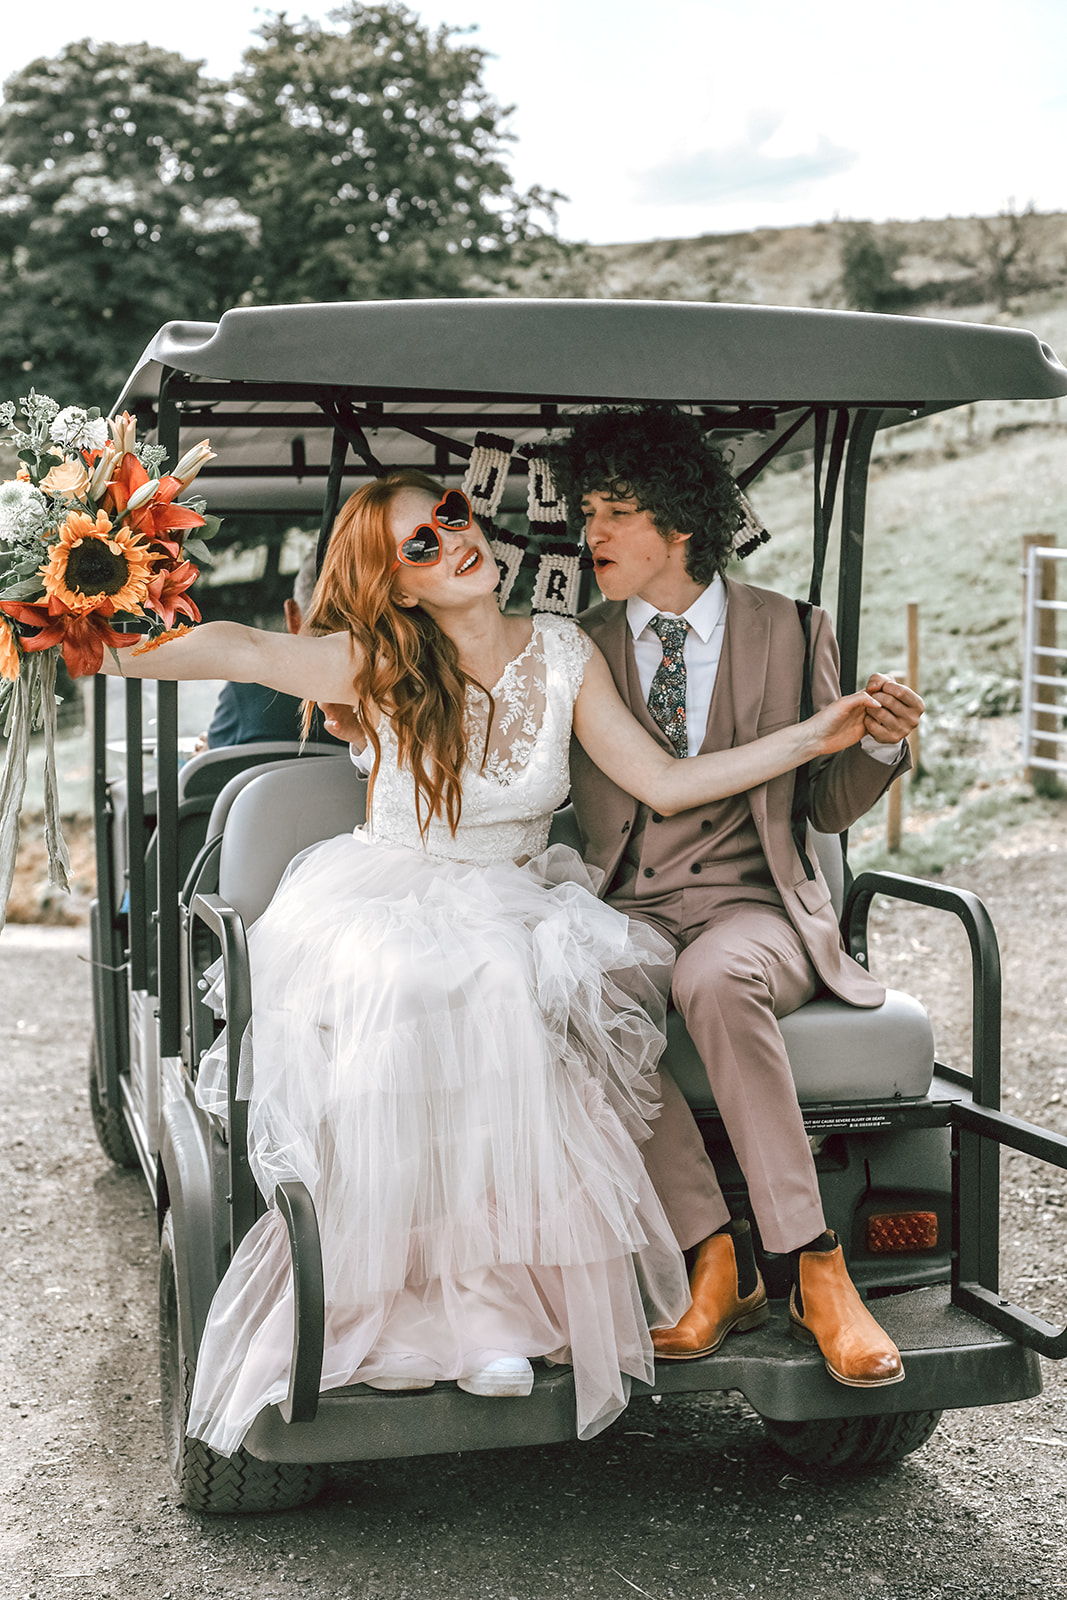 rustic festival wedding - bride and groom in golf buggy - fun boho wedding